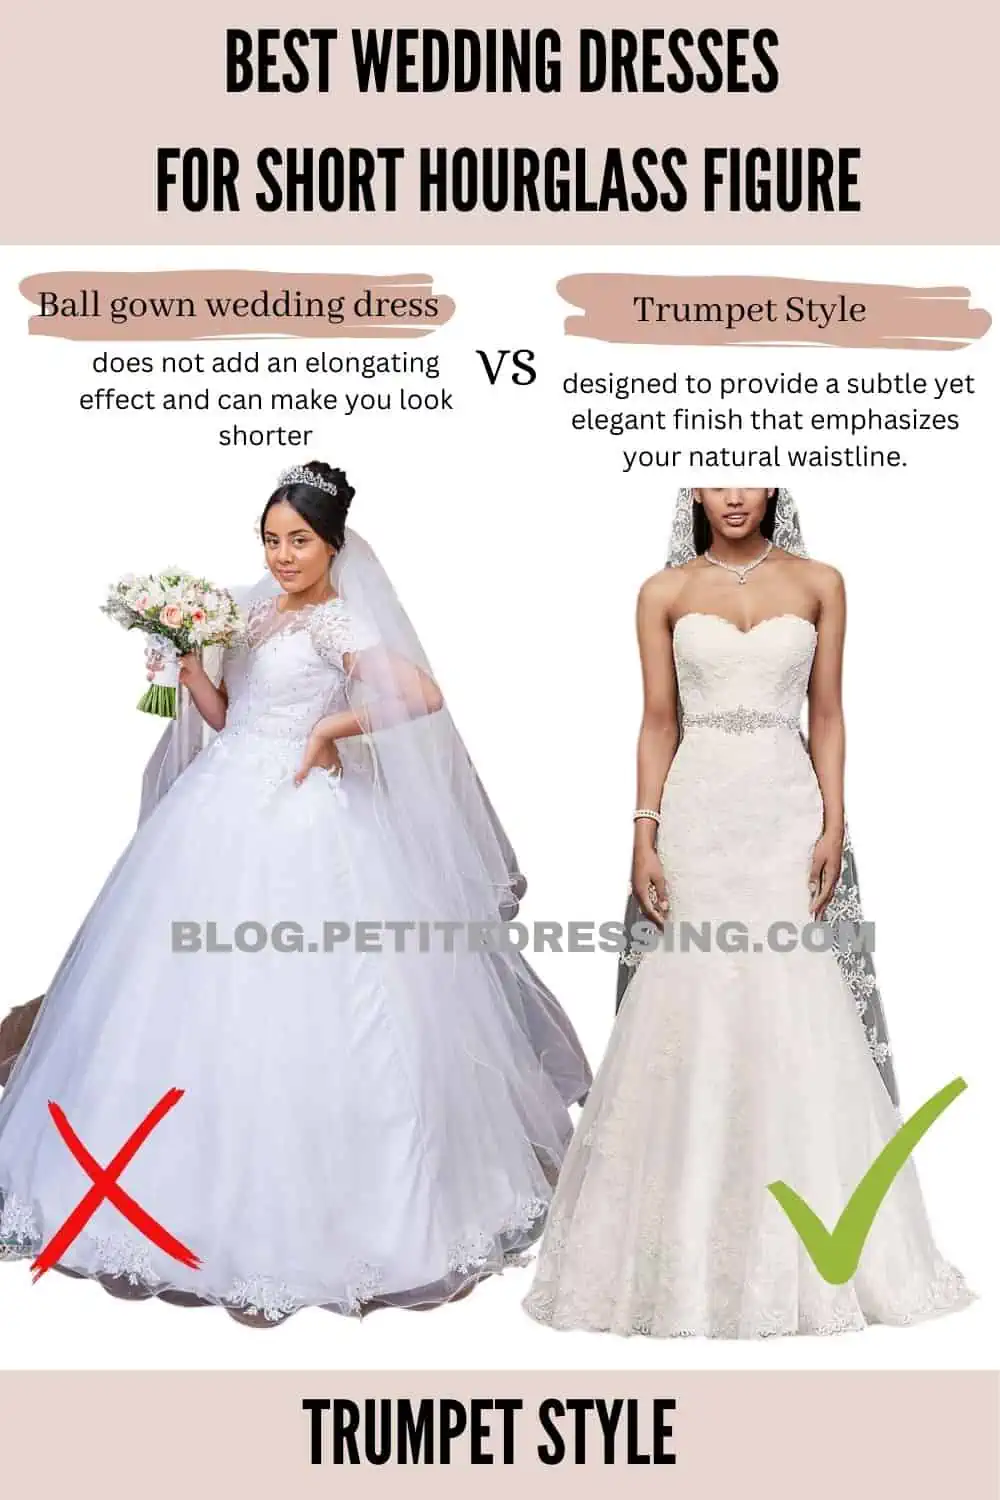 Best Wedding Dresses for Hourglass Figures